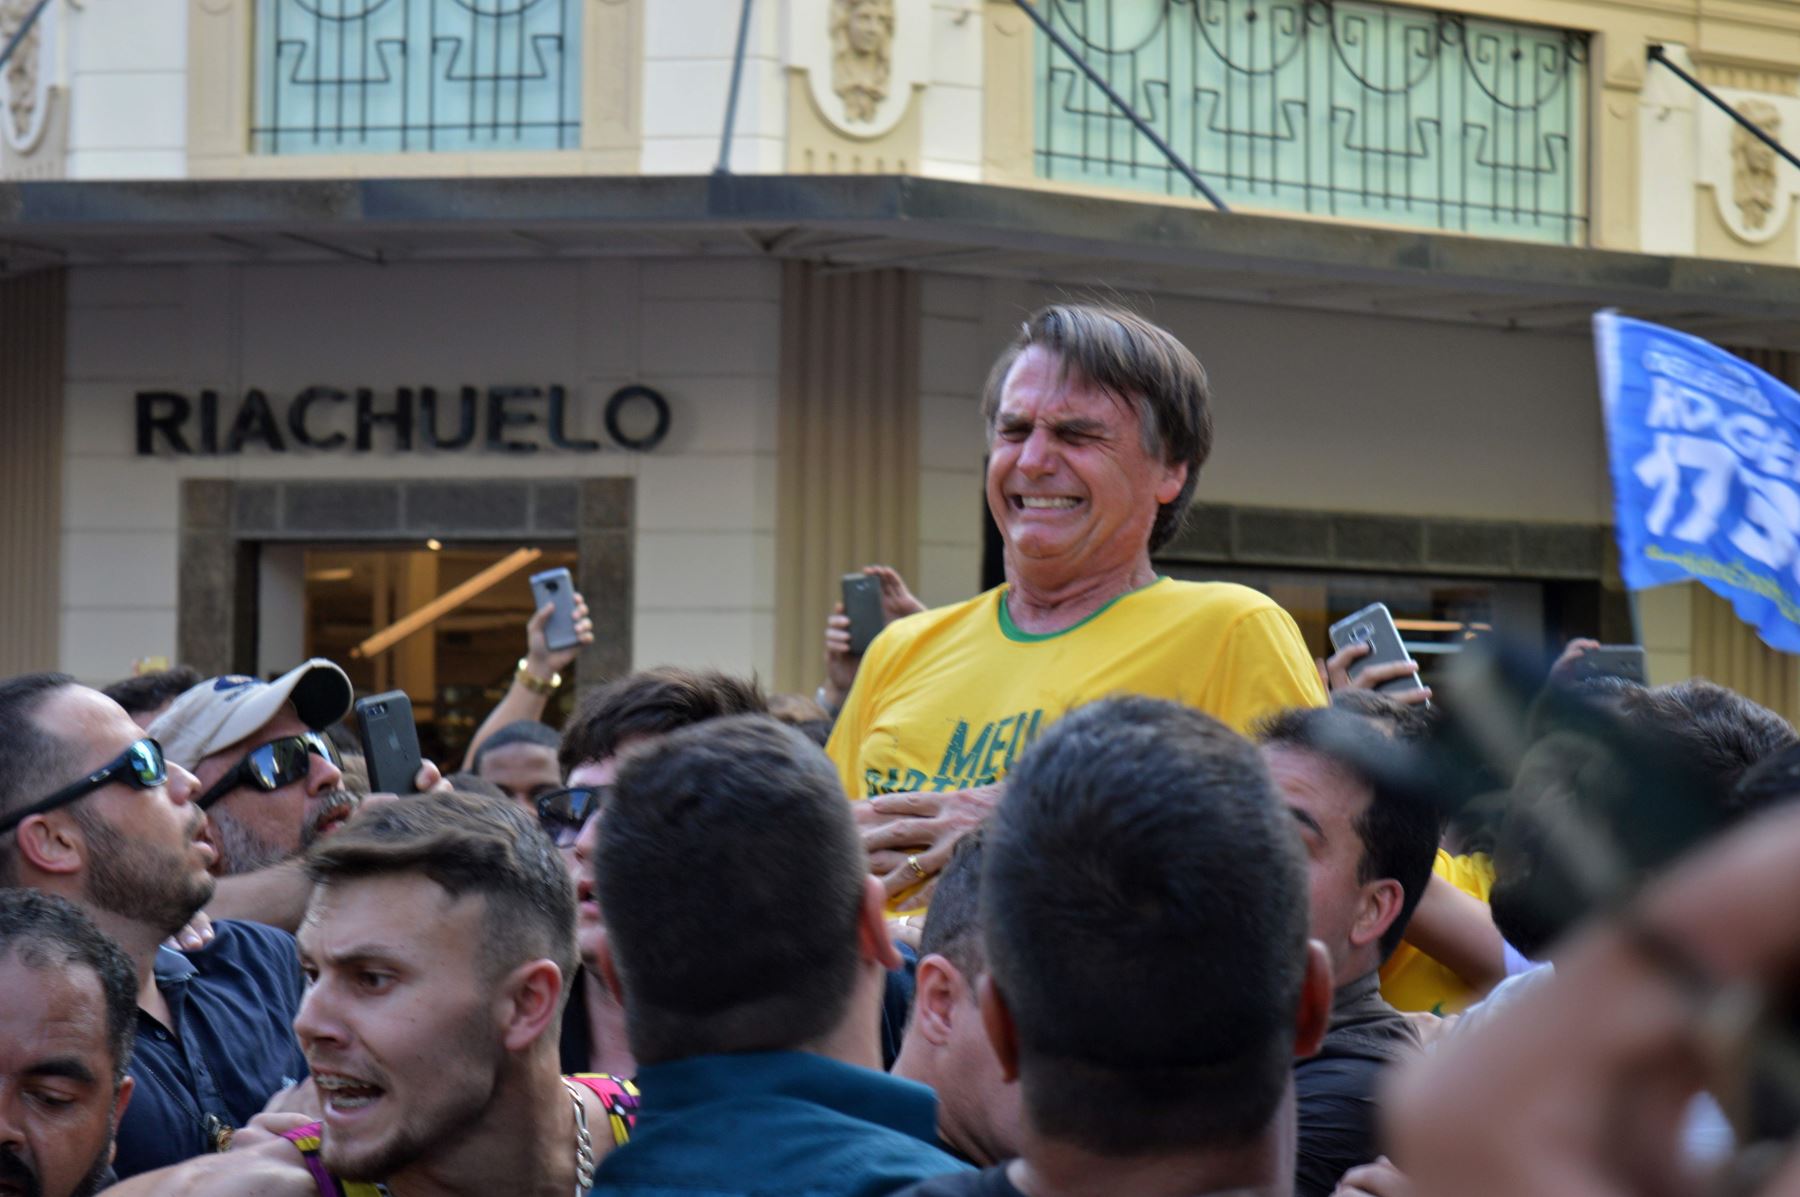 El candidato presidencial Jair Bolsonaro hace gestos después de ser apuñalado en el estómago  Foto: AFP